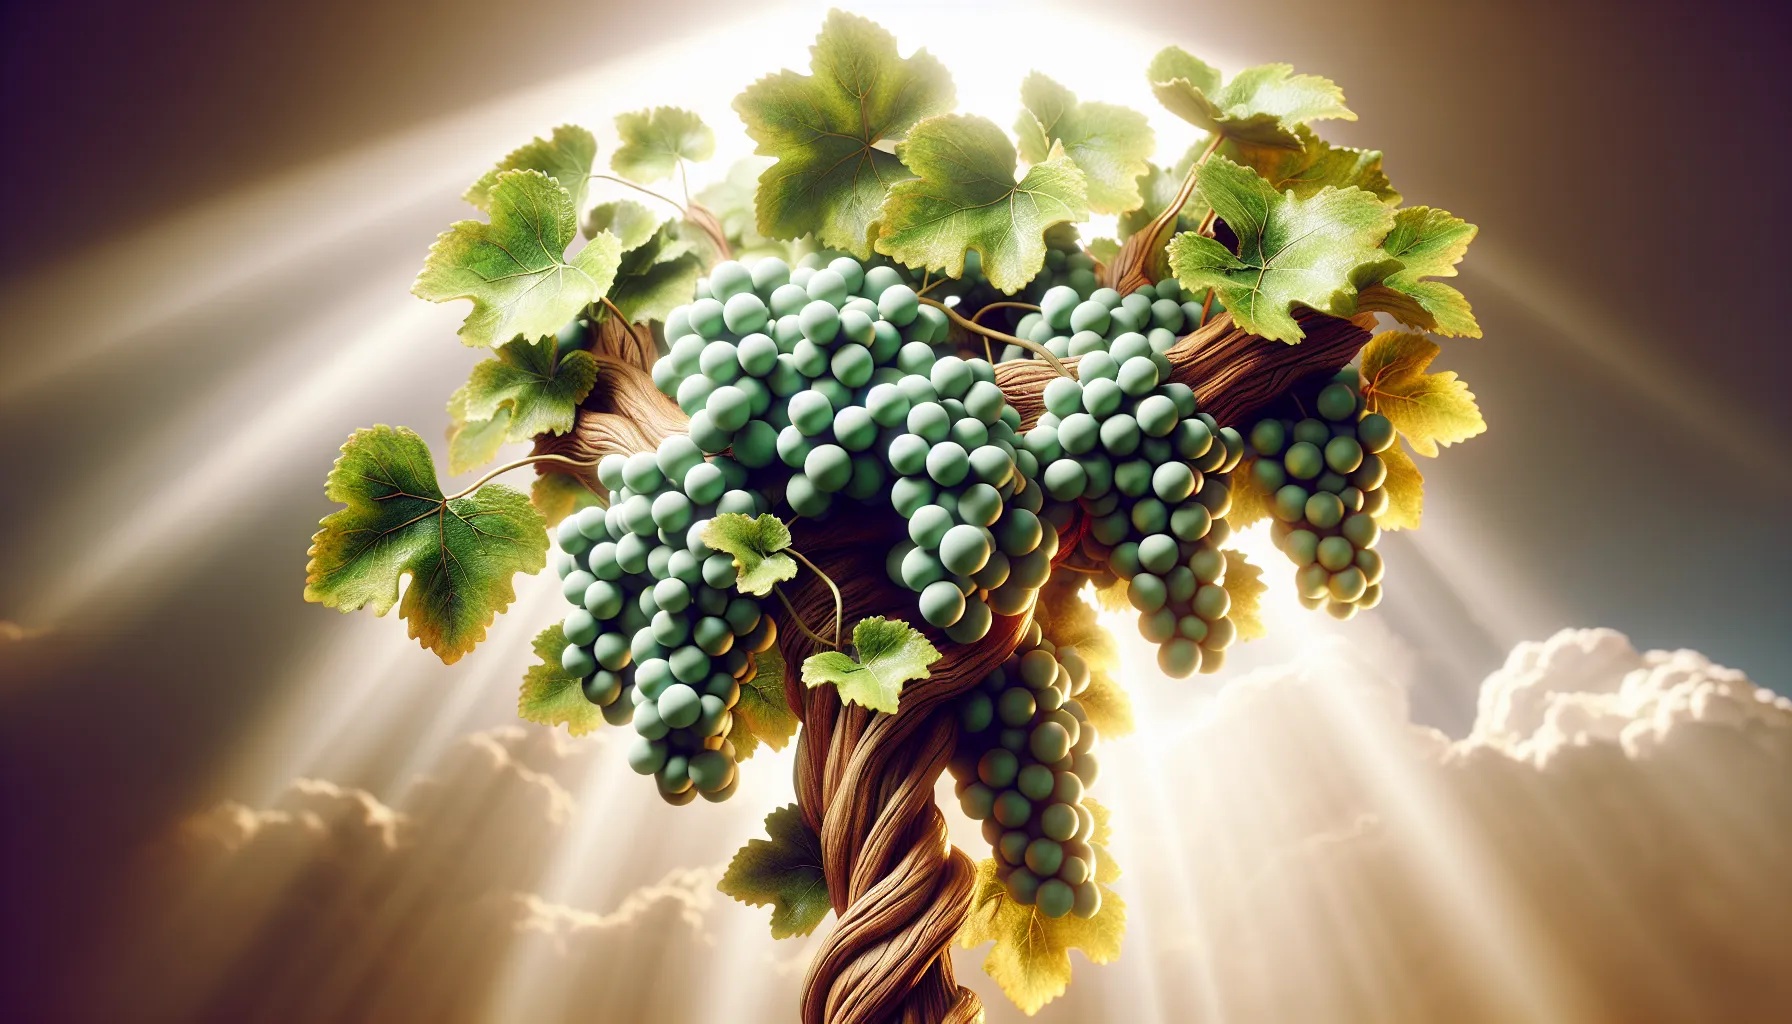 Imagen ilustrativa de una vid portando muchos racimos de uvas, simbolizando la idea de dar fruto en la vida cristiana según la enseñanza bíblica.